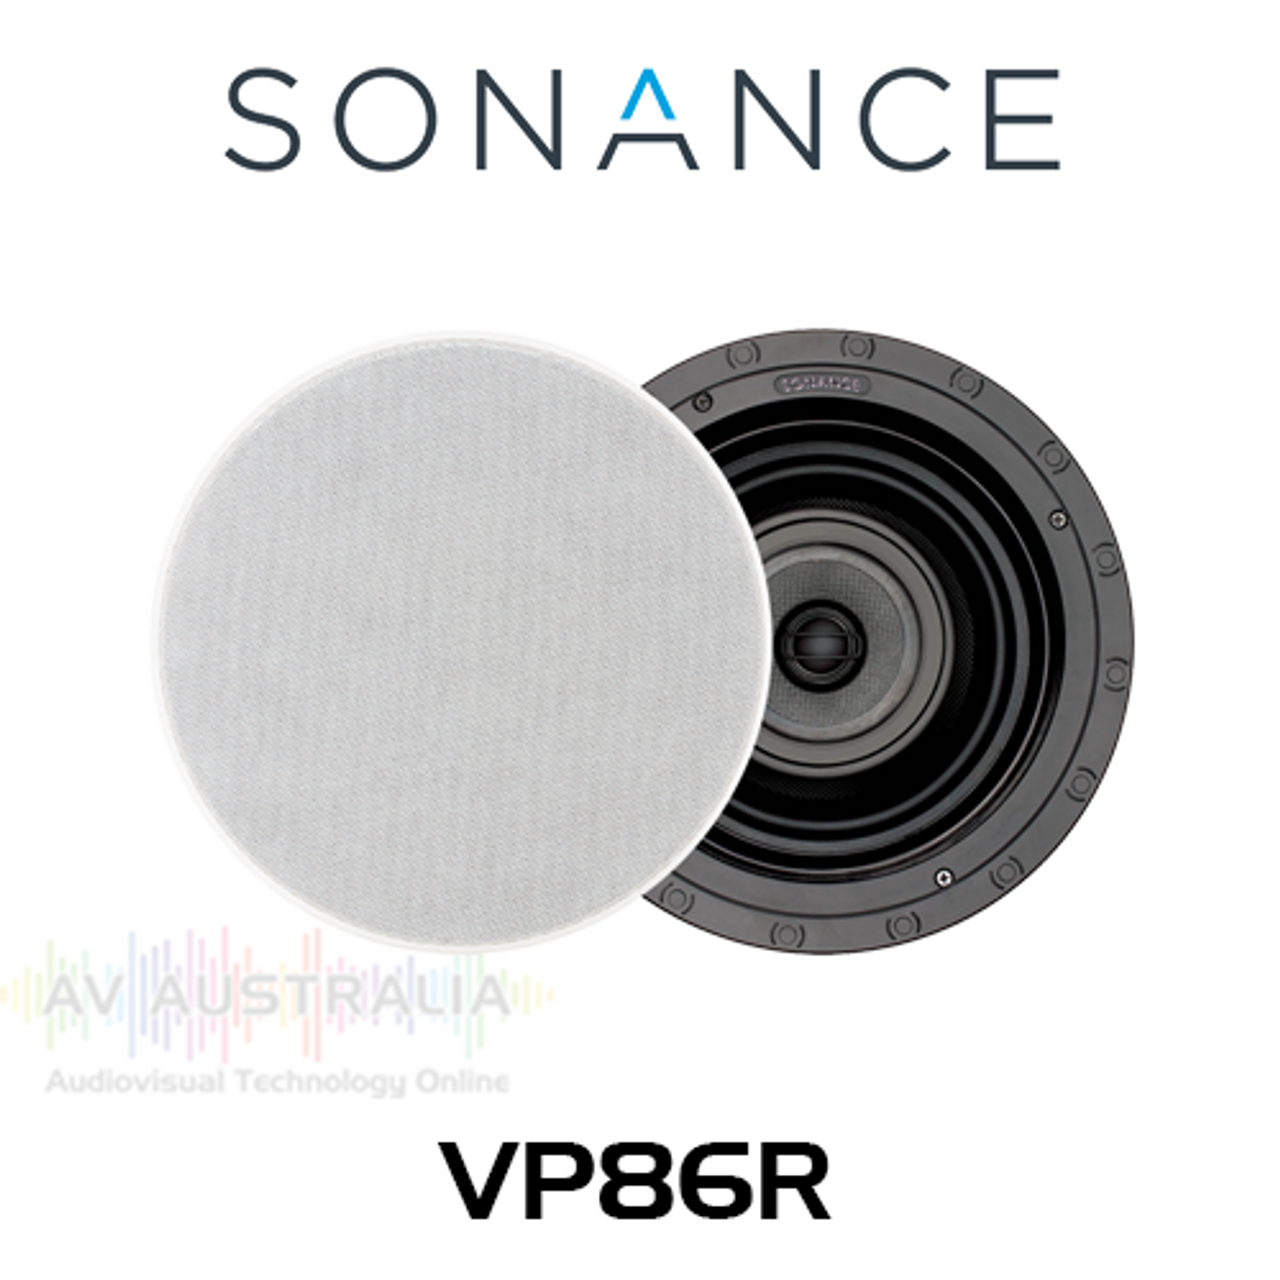 Sonance VP86R 8" In-Ceiling Round Speakers (Pair)